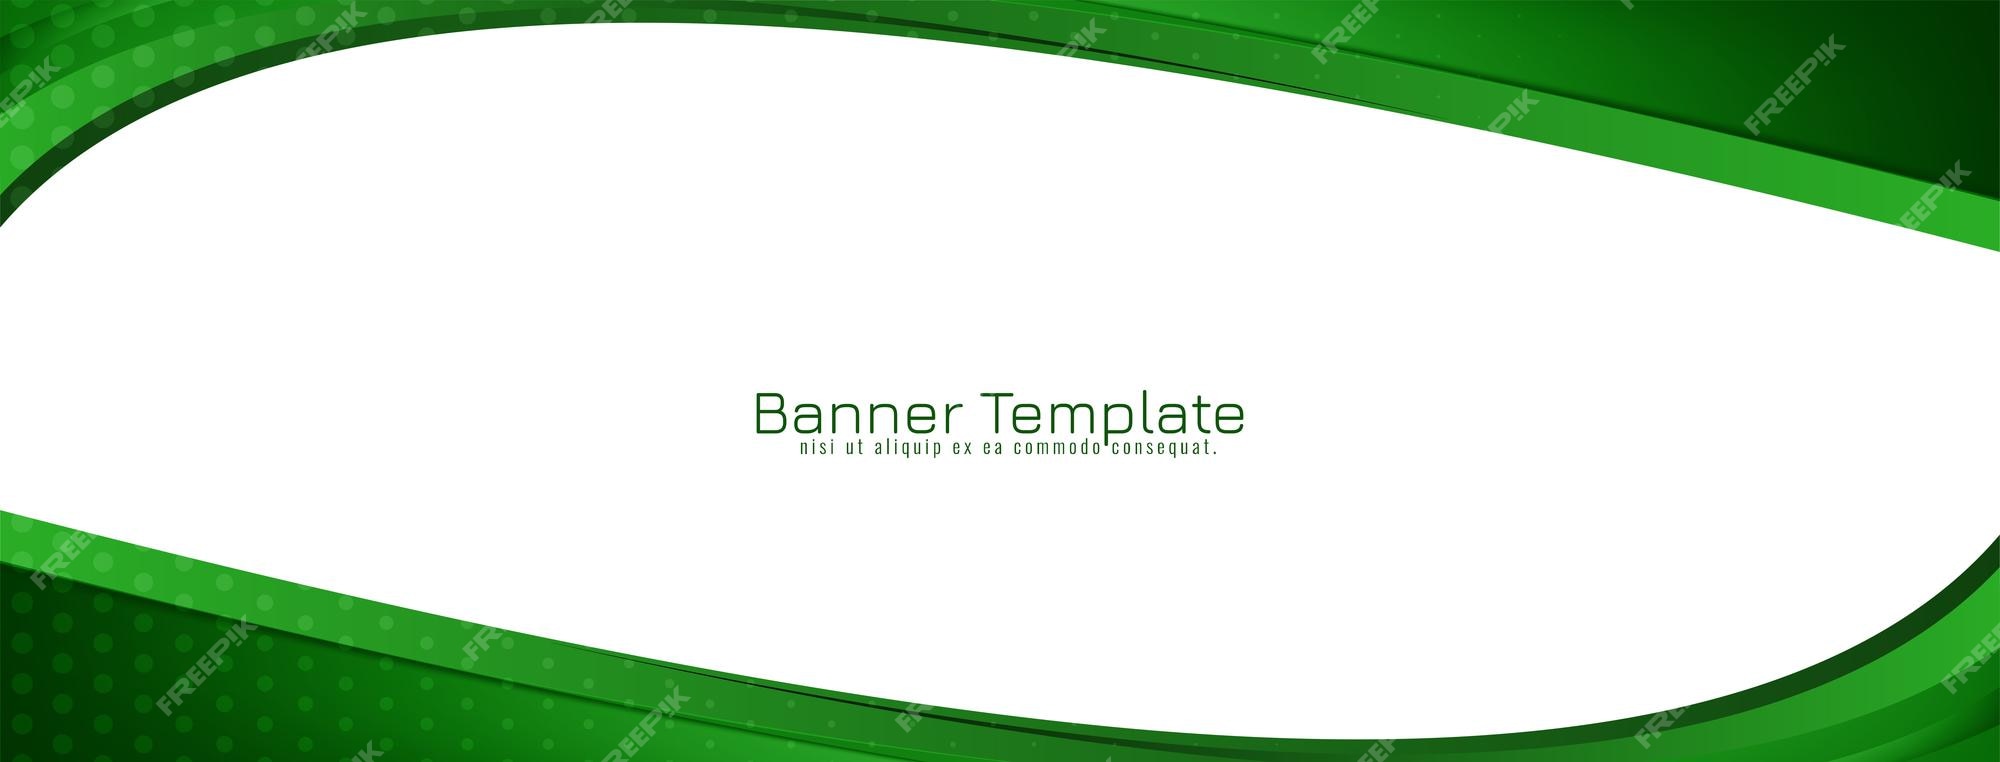 Bạn muốn sở hữu một chiếc banner đẹp và miễn phí? Vector banner màu xanh lá cây chính là lựa chọn hoàn hảo để tăng cường tính thẩm mỹ của website của bạn. Với hình ảnh sinh động và đầy sức sống, chiếc banner này sẽ truyền tải đến khách hàng của bạn một thông điệp tích cực về sự tươi mới.